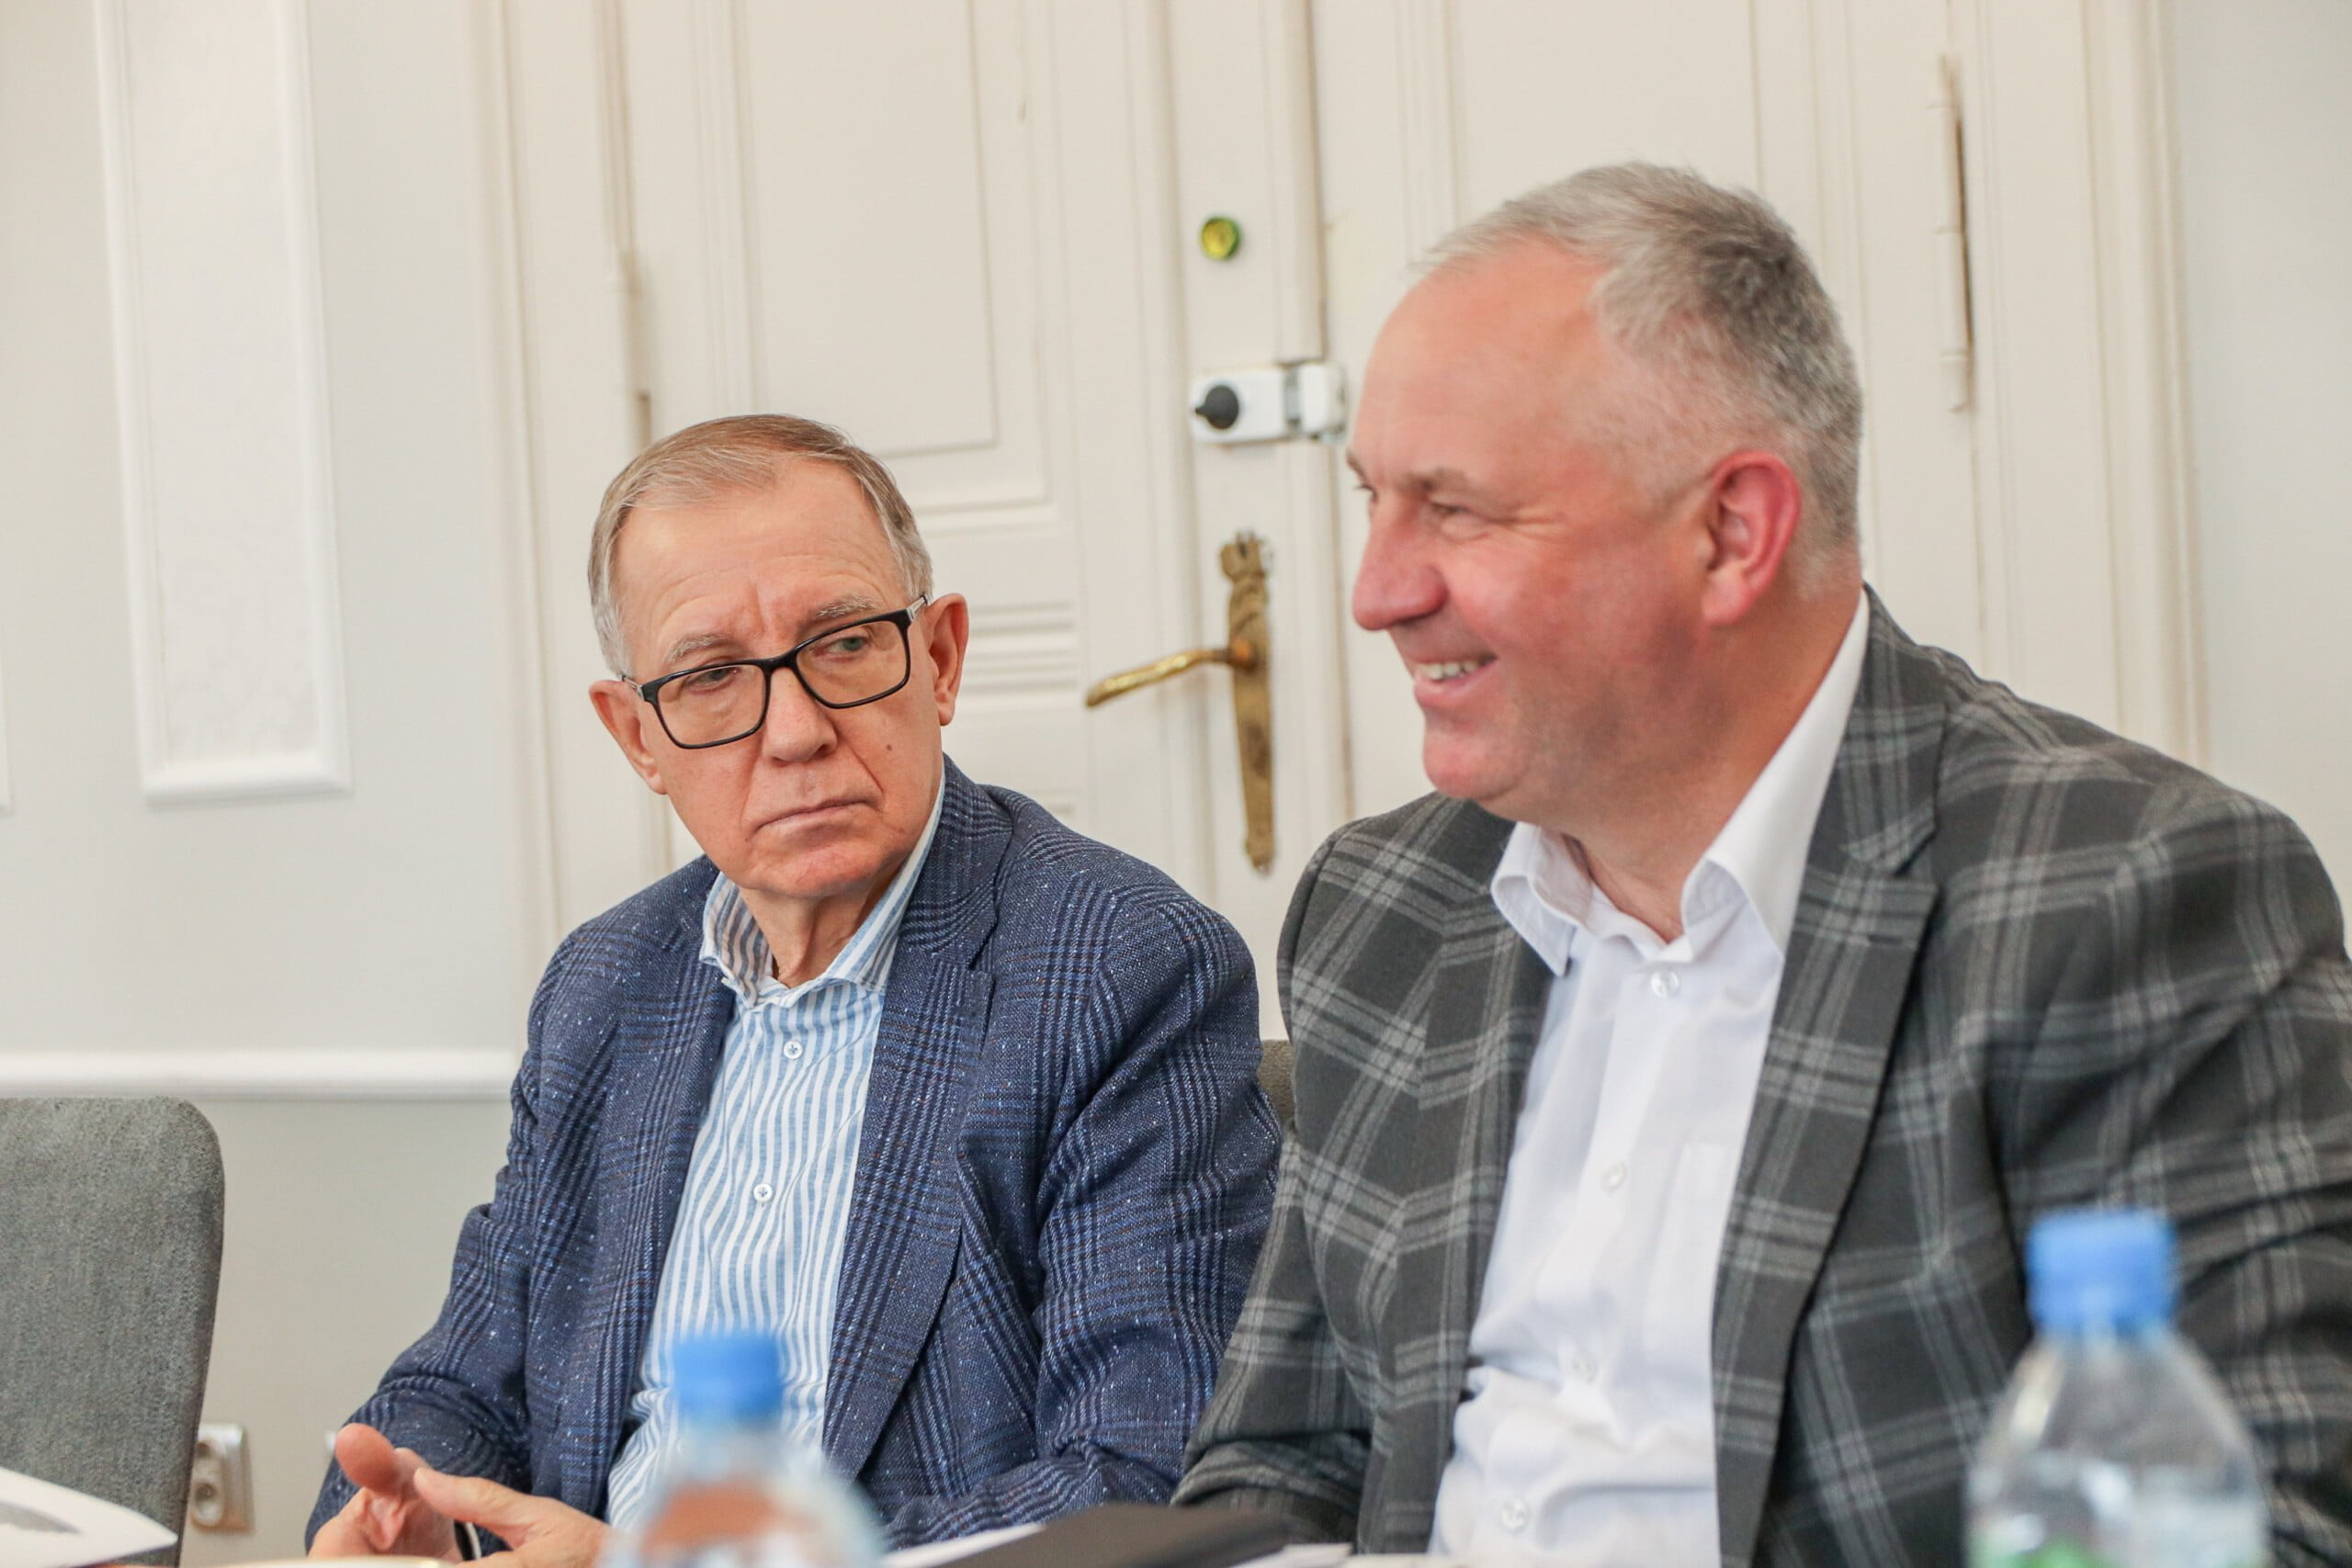 Na zdjeciu są dwaj mężczyżni: własciciel firmy POLMET Henryk Kinder oraz wiceprzeydent Tadeusz Błedzki, który się uśmiecha. 